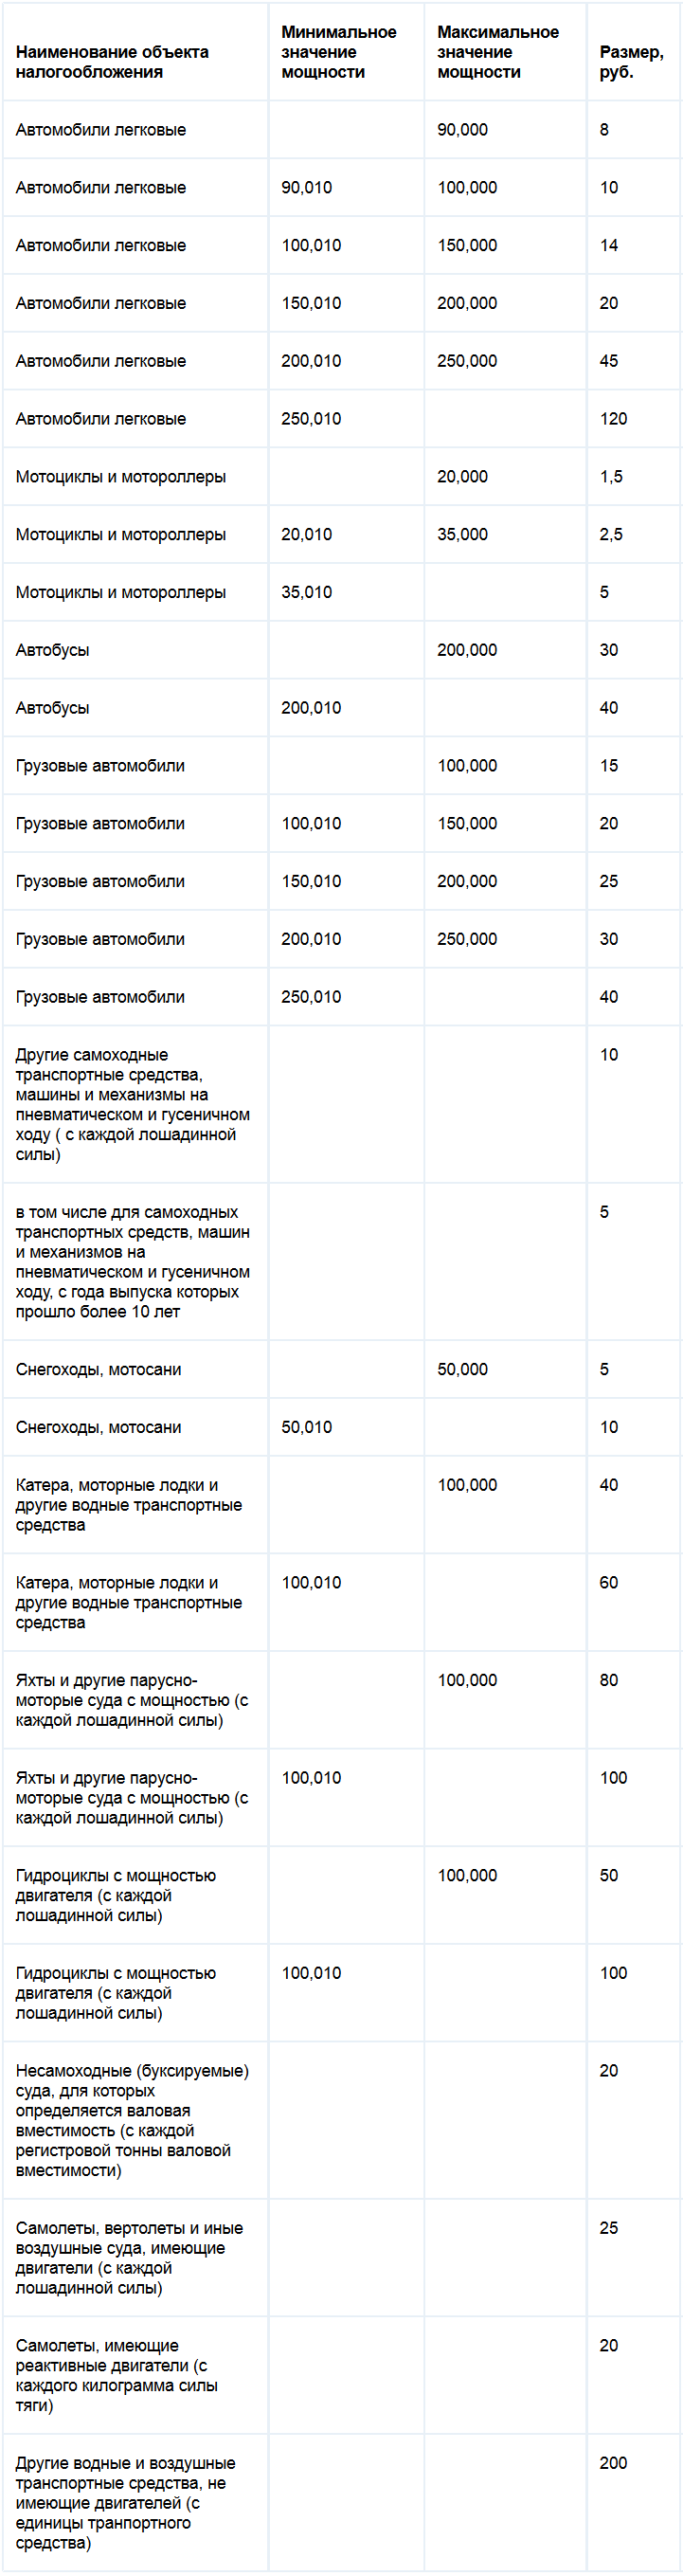 Ставки транспортного налога республики Алтай